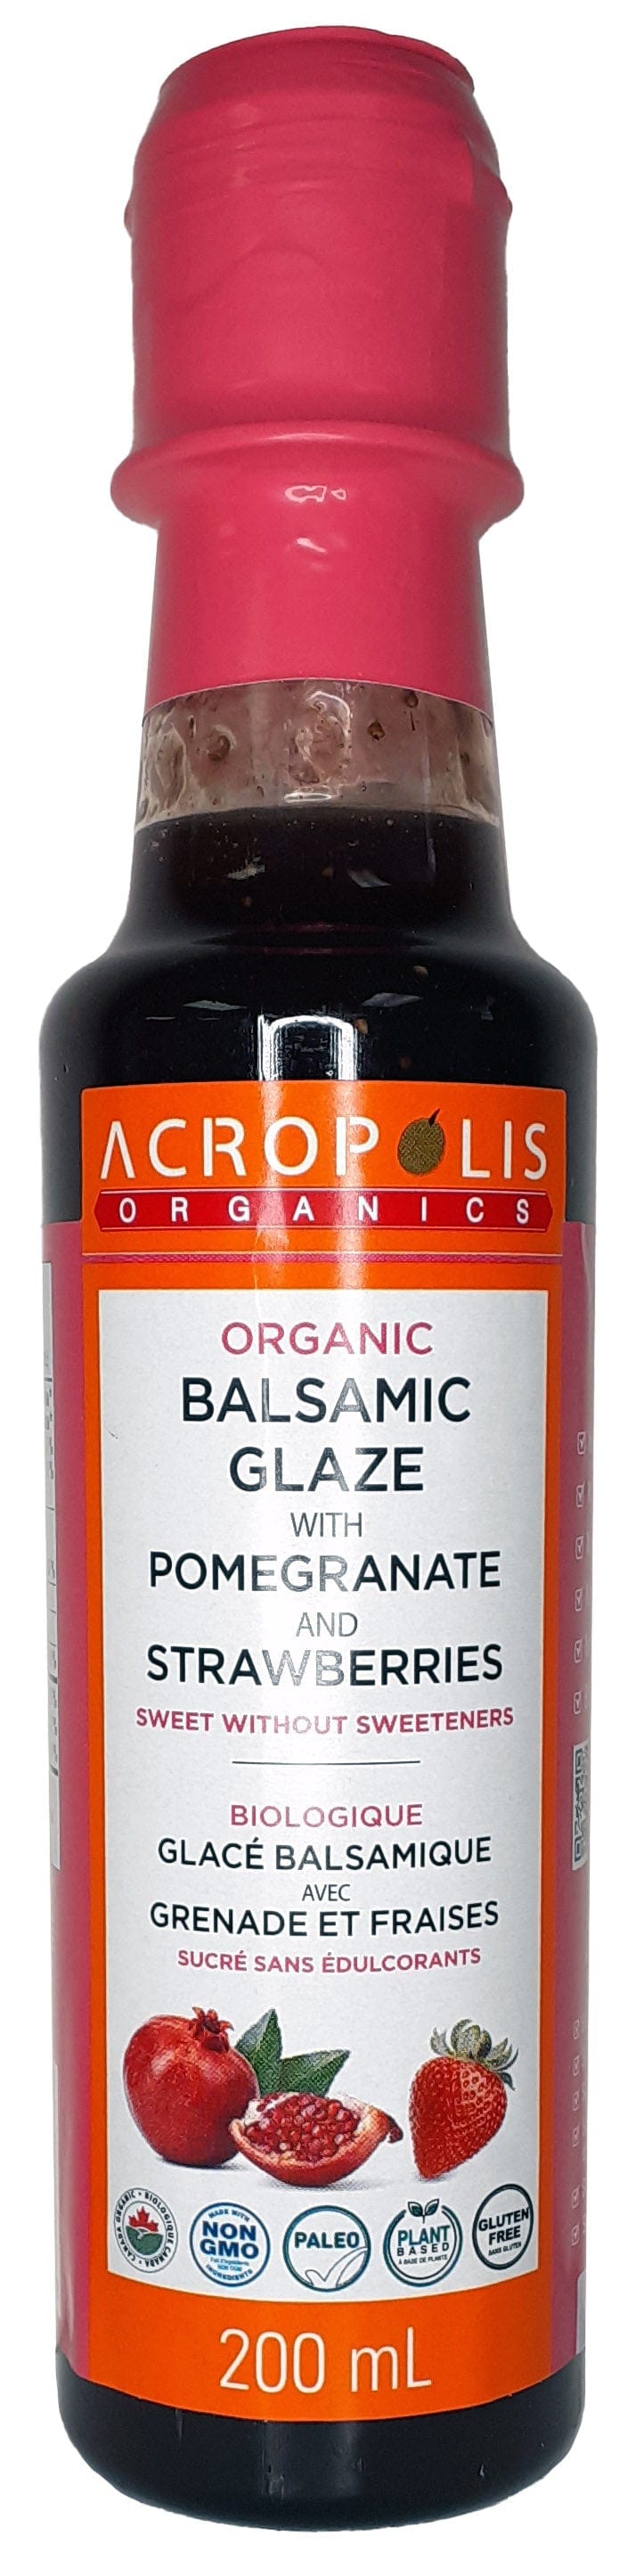 ACROPOLIS Épicerie Glacé balsamique avec grenade et fraises bio 200ml
DATE DE PÉREMPTION : 18 JUIN 2024